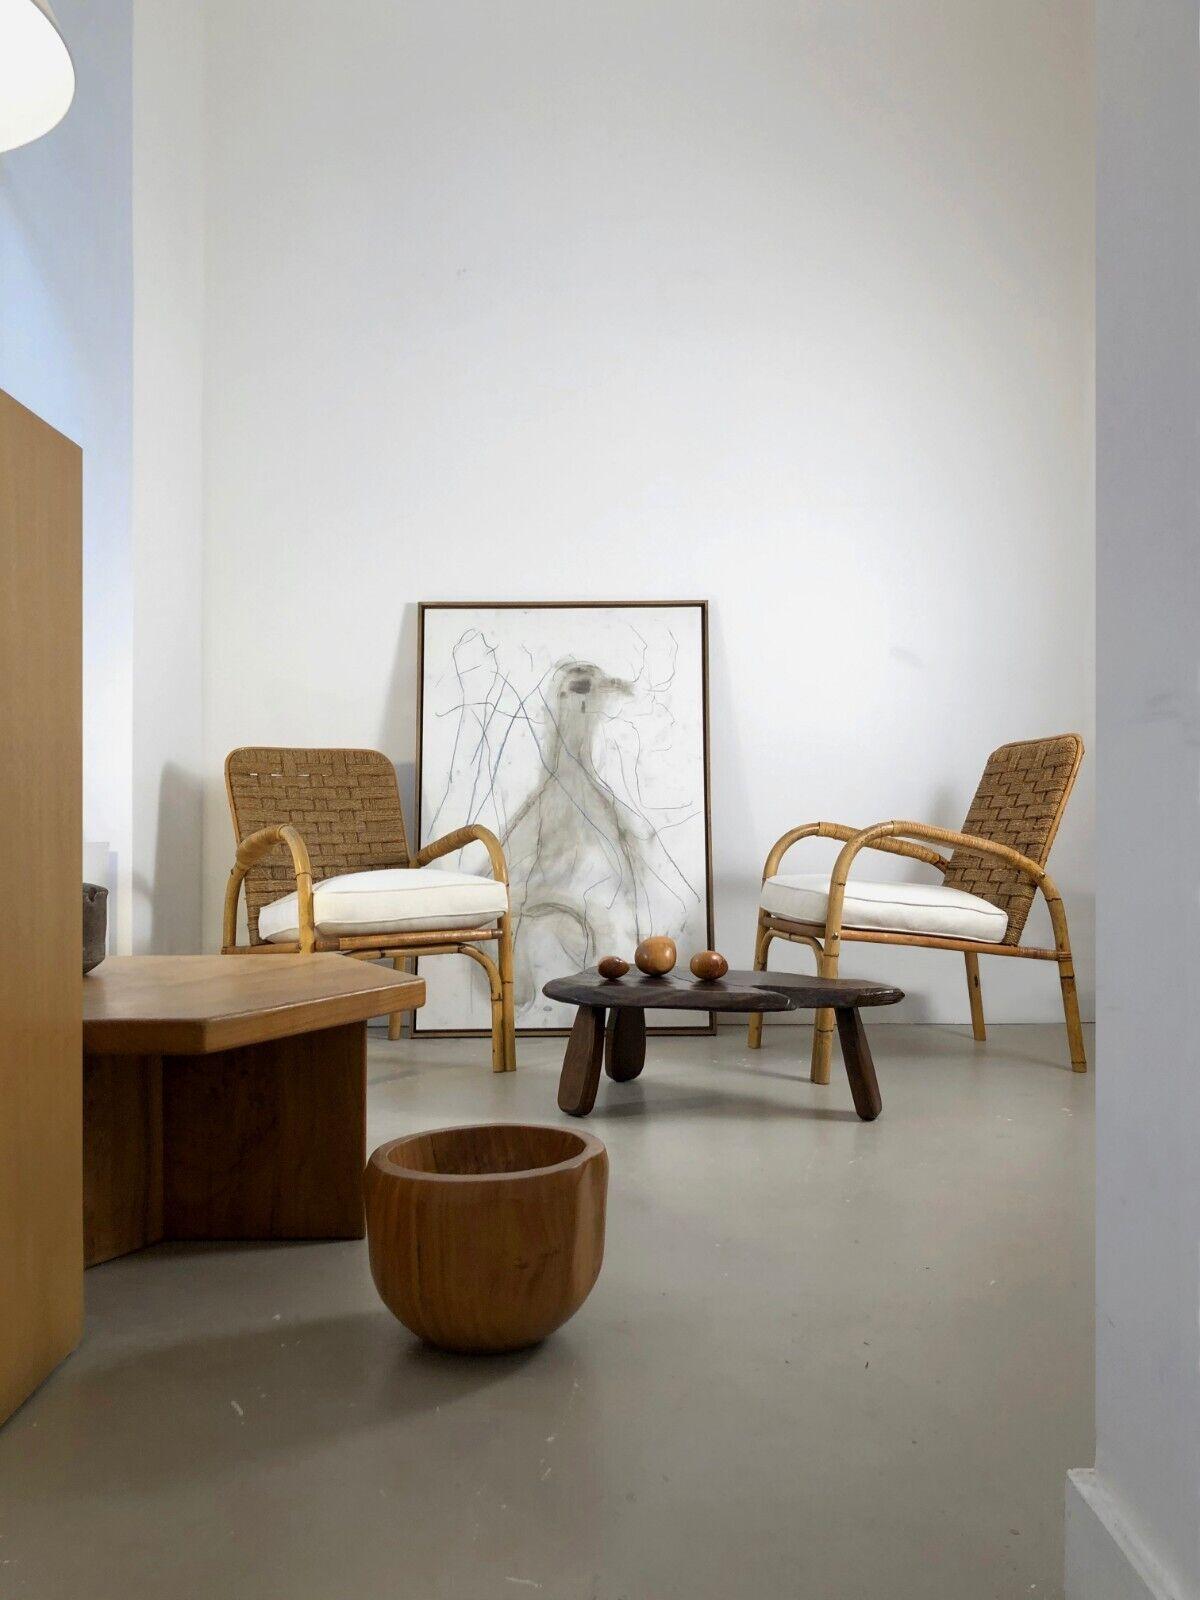 Une élégante paire de fauteuils d'Adrien Audoux & Frida Minnet,  Audoux-Minnet, France 1950 ; bambou cintré, lignes fines et rondes, assises carrées avec 2 coussins en lin écru réalisés sur mesure, sur ressorts, dossiers inclinés en corde finement